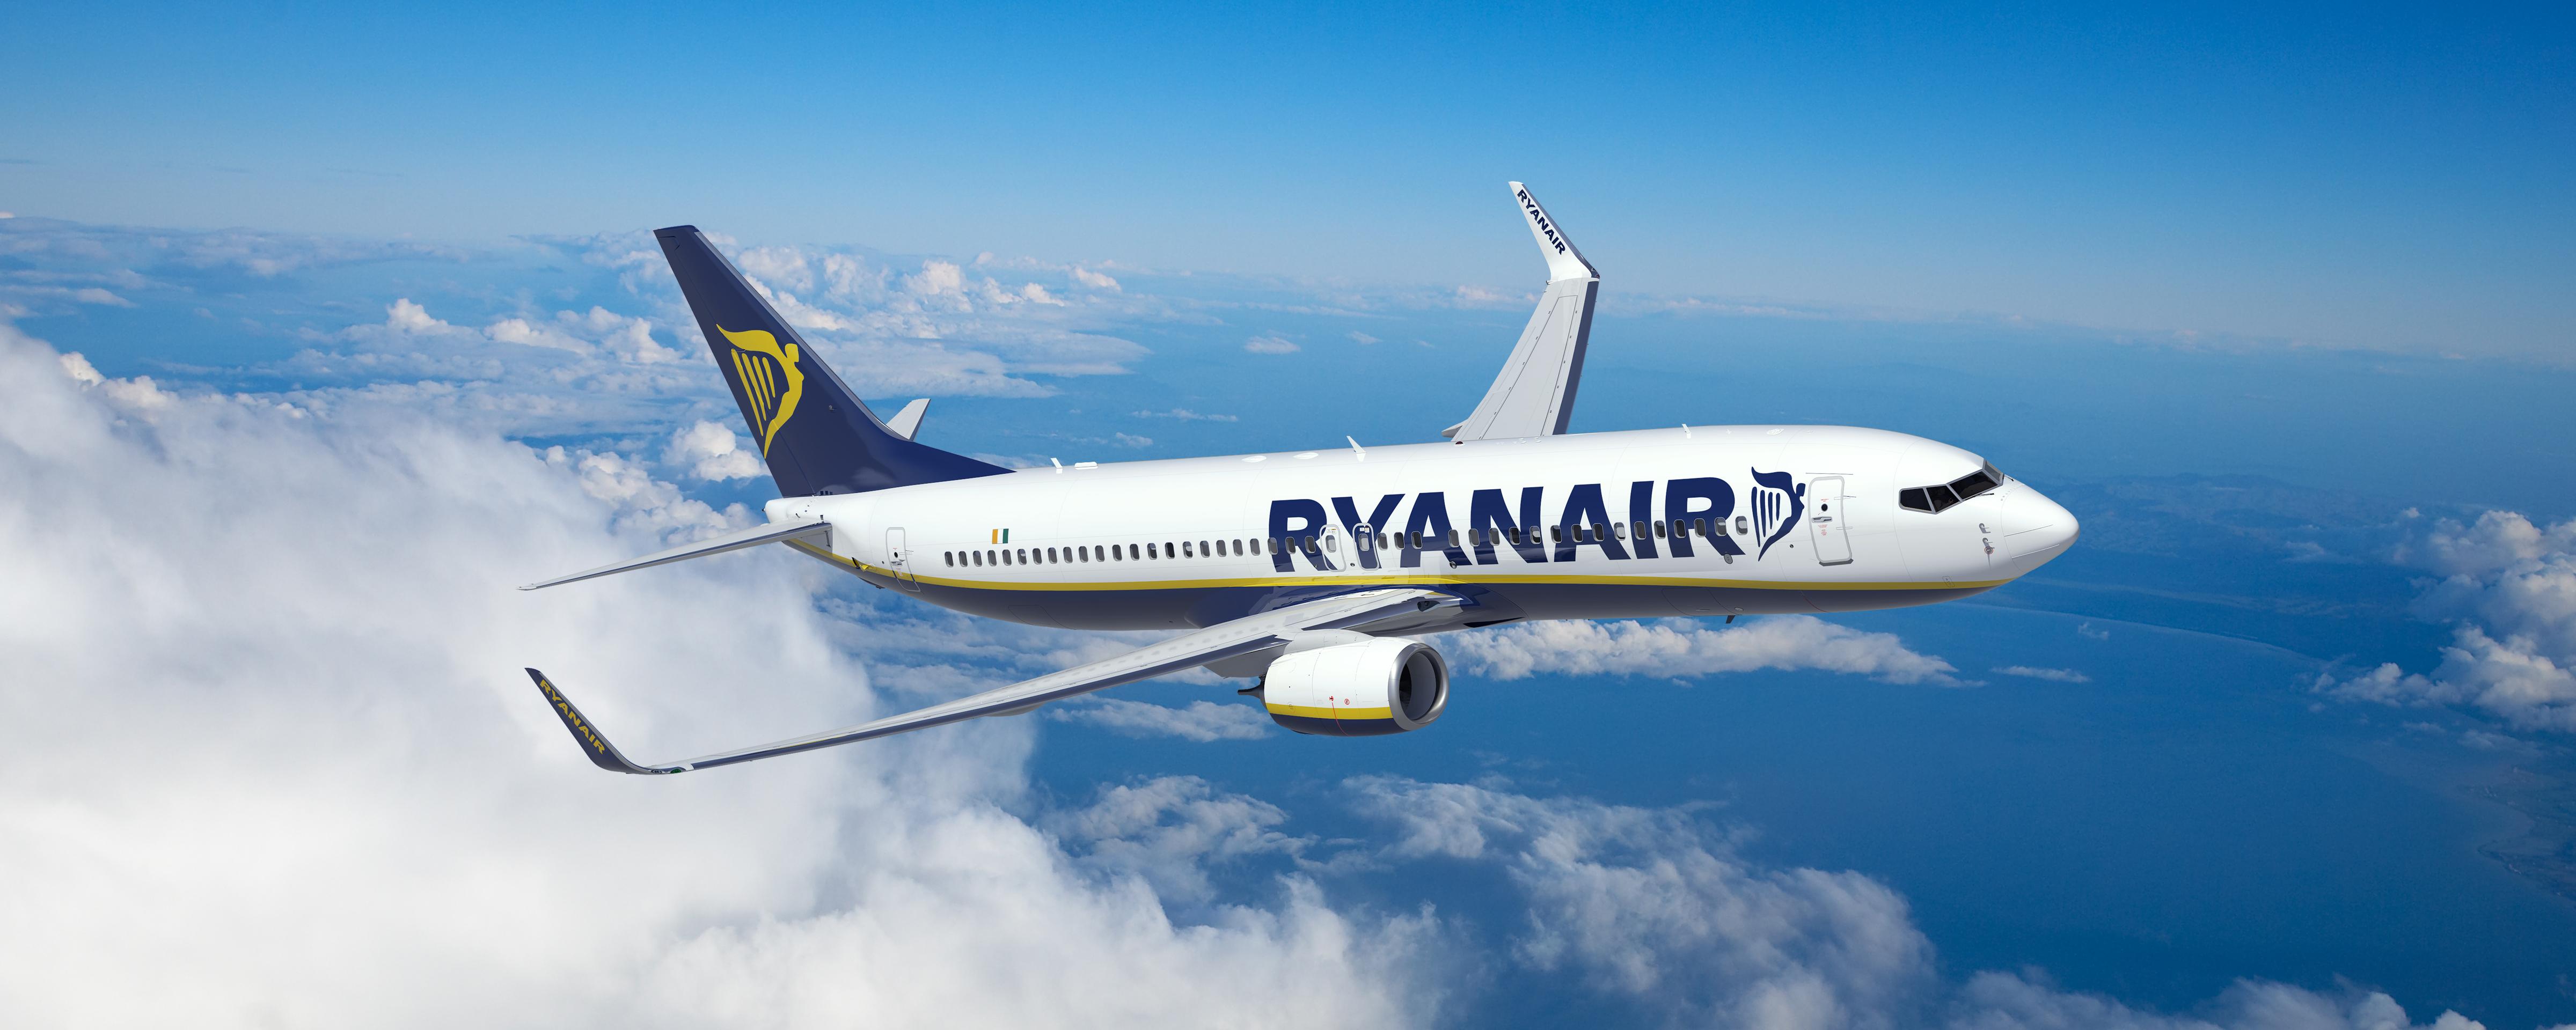 Η Ryanair Ανακοινωνει Δυο Νεα Δρομολογια Απο Θεσσαλονικη  Μεσω Μιλανο Μπεργκαμο